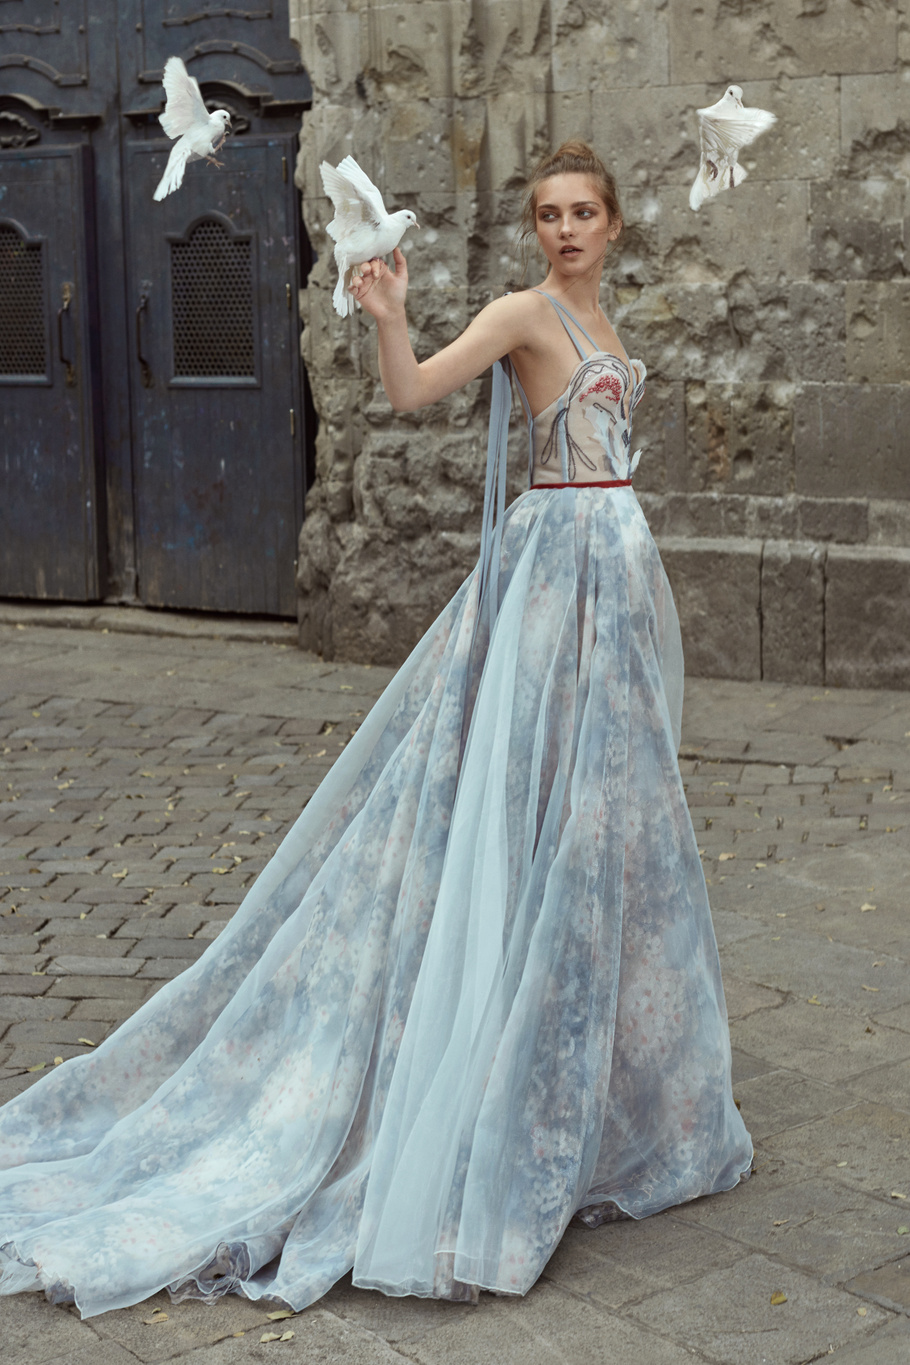 Купить свадебное платье «Мария» Рара Авис из коллекции Флорал Парадайз 2018 года в Нижнем Новгороде недорого